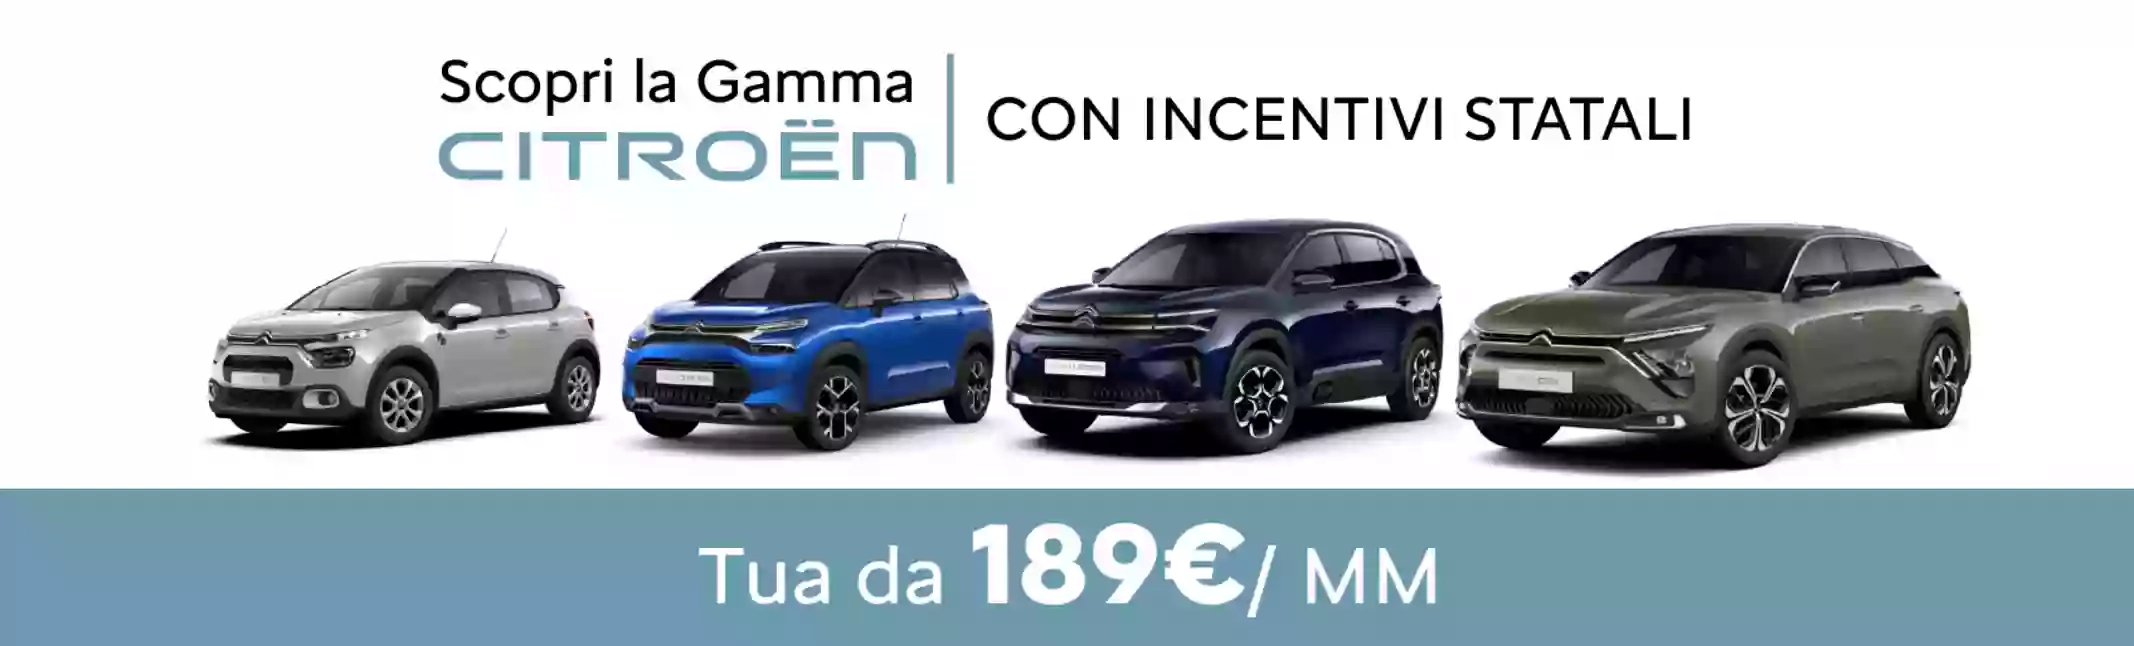 Concessionaria Citroën Napoli - Agnano - Citroën Farina - Gruppo Farina